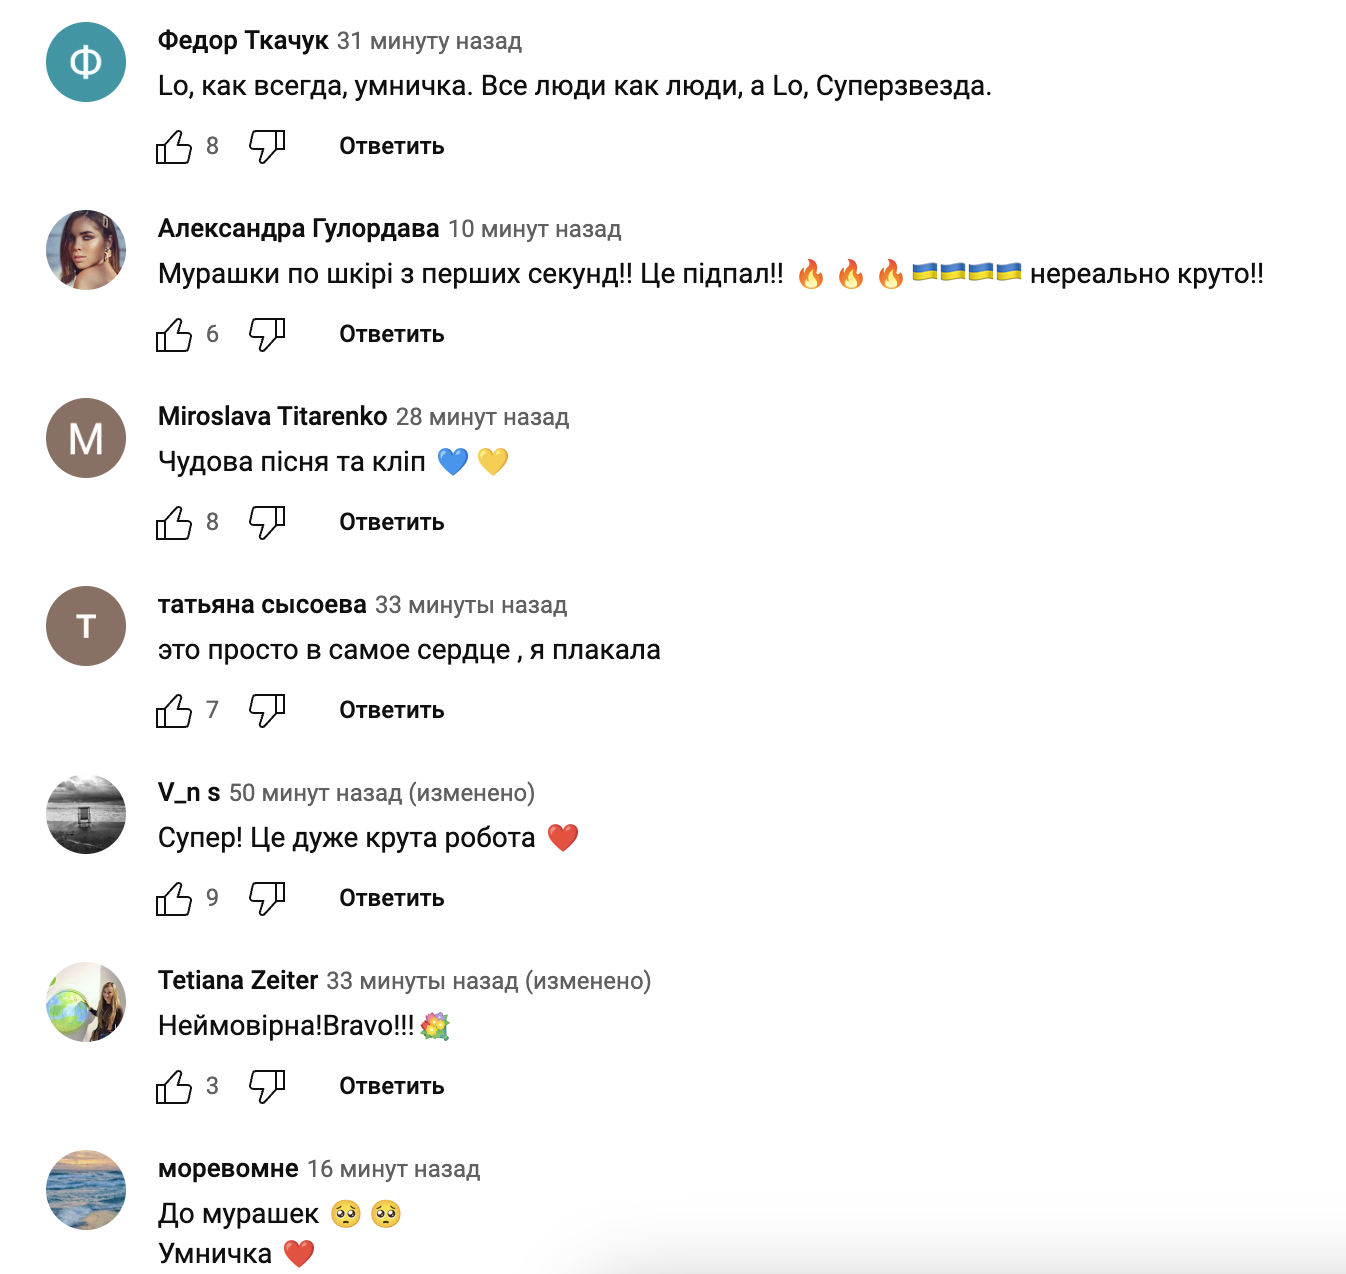 В годовщину полномасштабной войны: Лобода до мурашек поразила украинцев патриотическим клипом на песню "По-українськи"